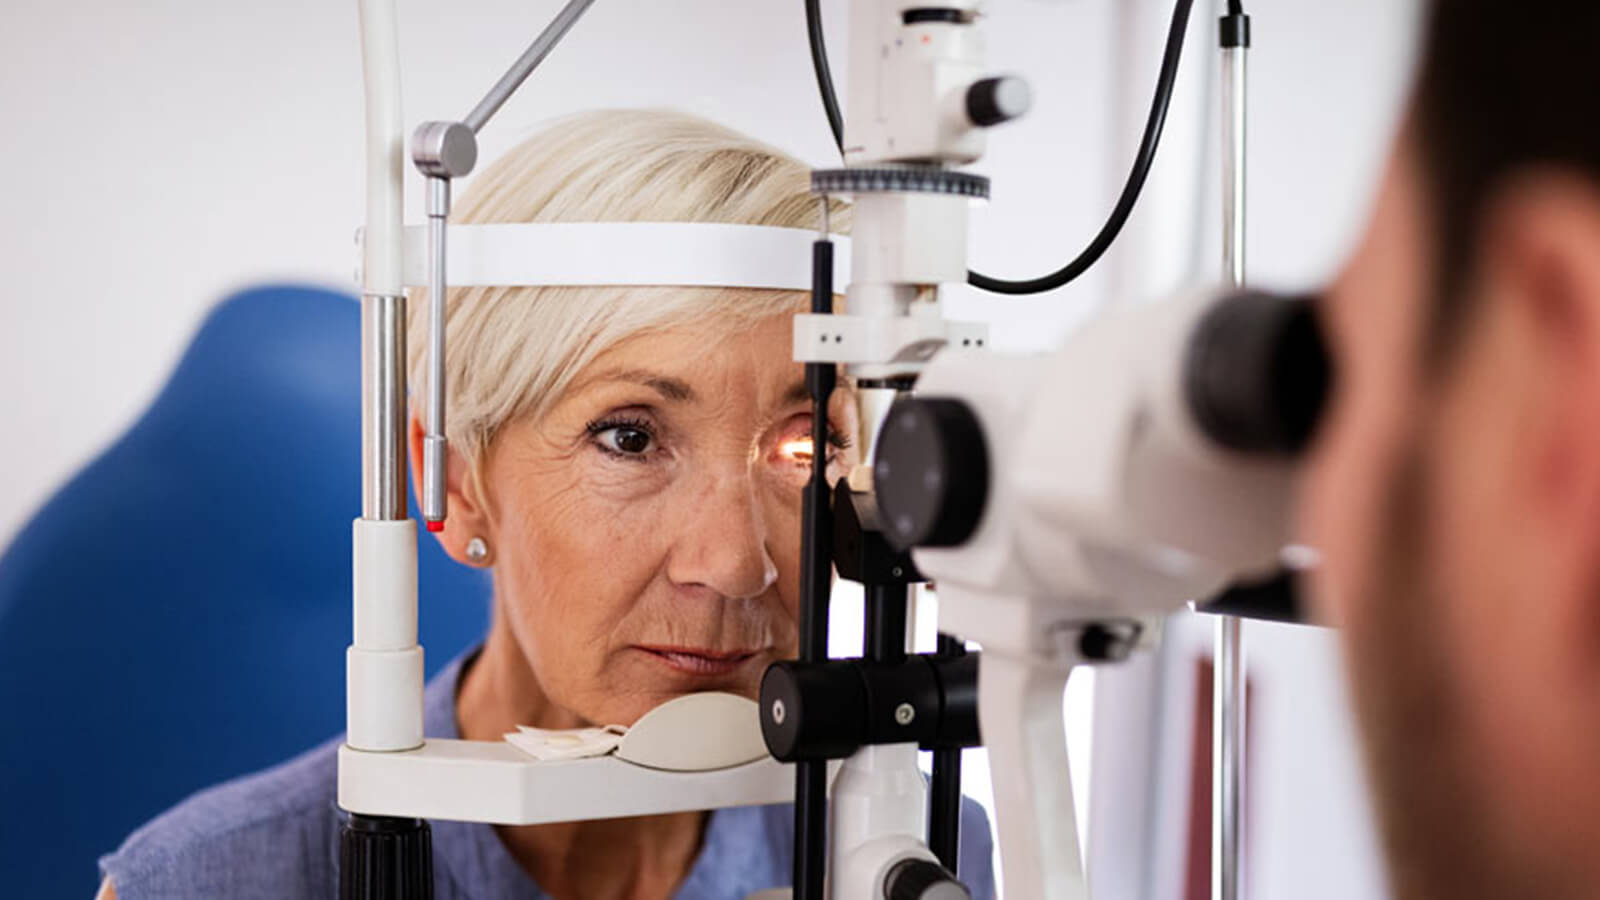 كيف تتغير قدرتك البصرية مع التقدم في العمر؟ - ماذا يحدث في حالة قصر البصر المرتبط بالشيخوخة؟ - الأمراض المرتبطة بتقدم العمر والرؤية - إرهاق العيون 